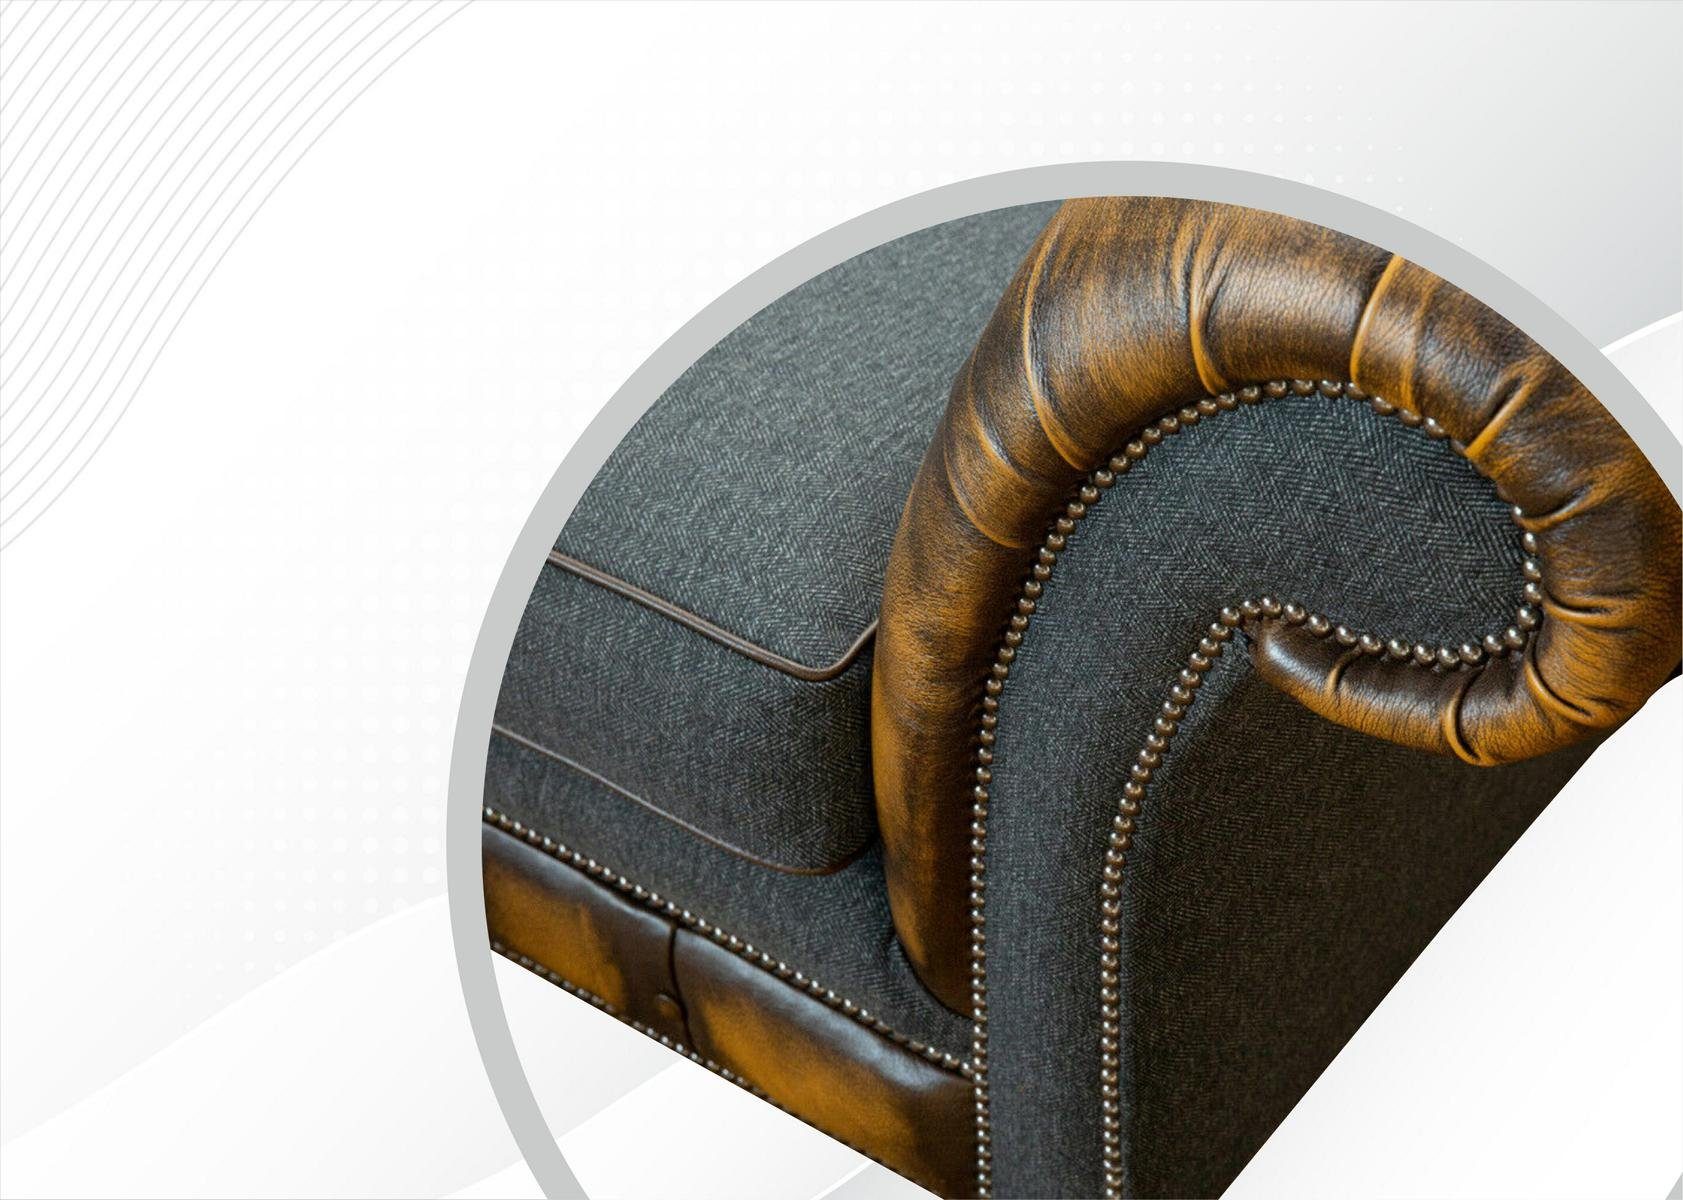 Modern in Made Brauner Chesterfield-Sofa JVmoebel Neu, Dreisitzer Chesterfield Möbel Europe Luxus